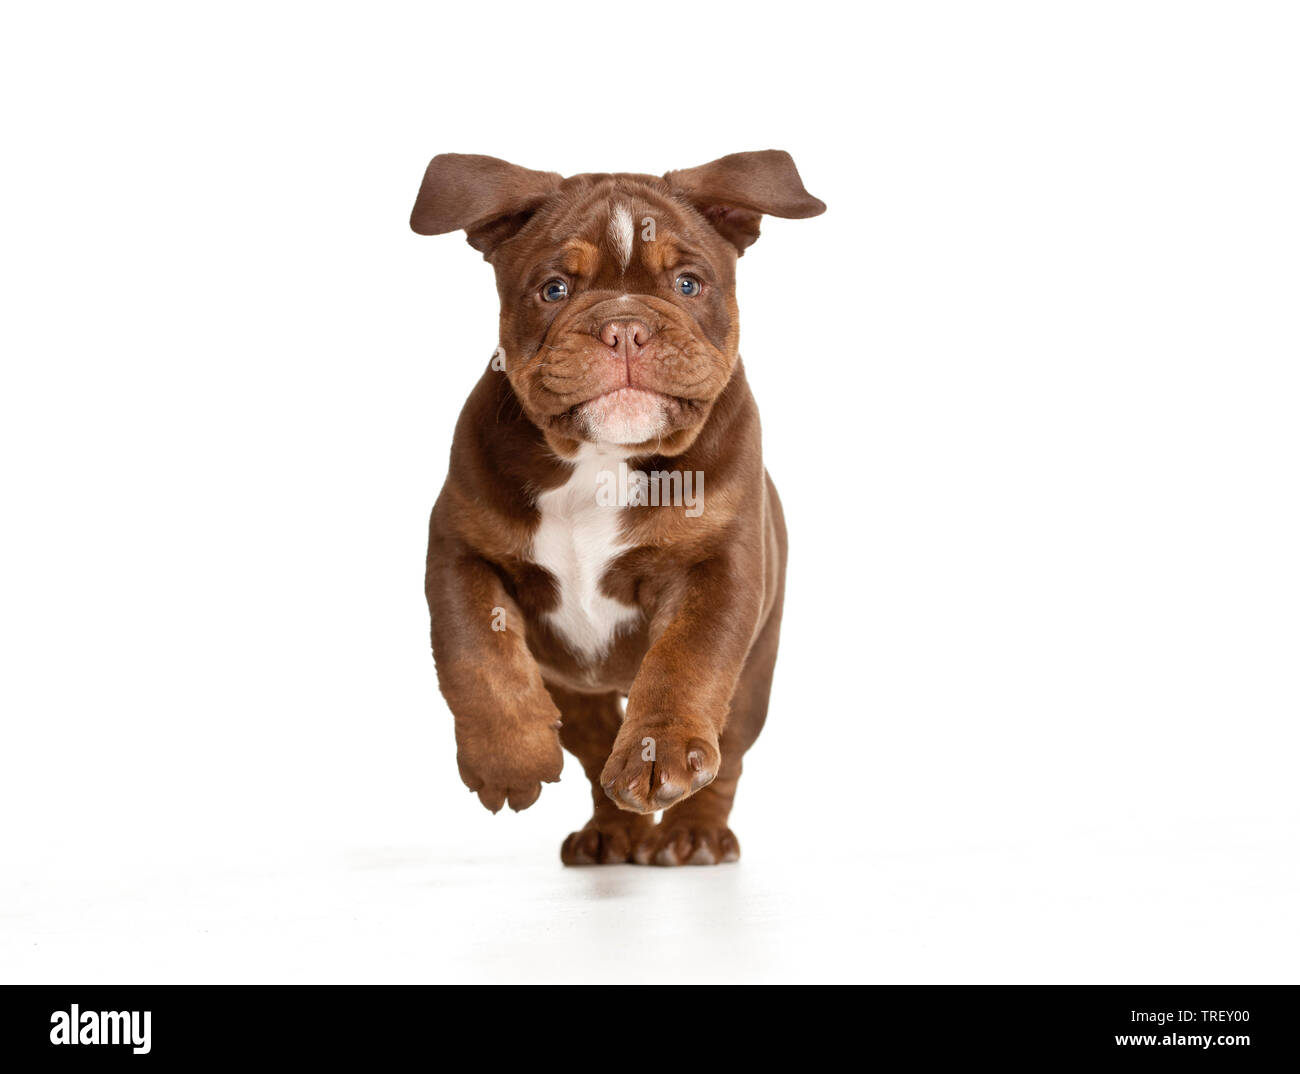 Bulldog anglais. Chiot courir vers la caméra. Studio photo sur un fond blanc. Allemagne Banque D'Images